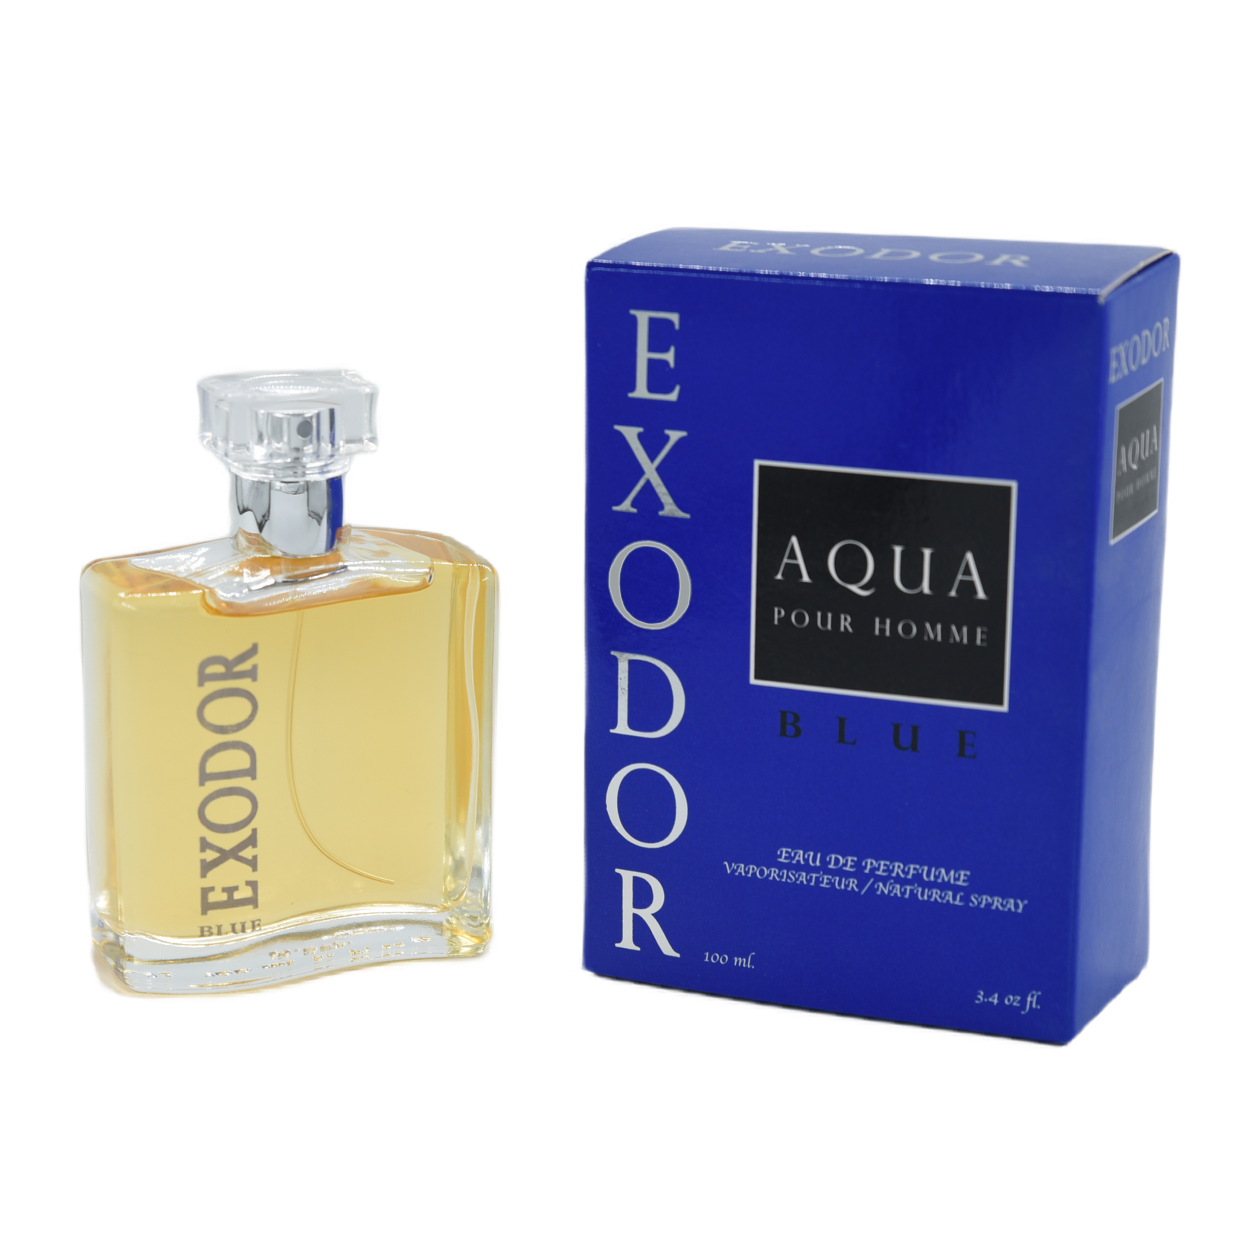 EXODOR BLUE Aqua Pour Homme EDP 100 ML